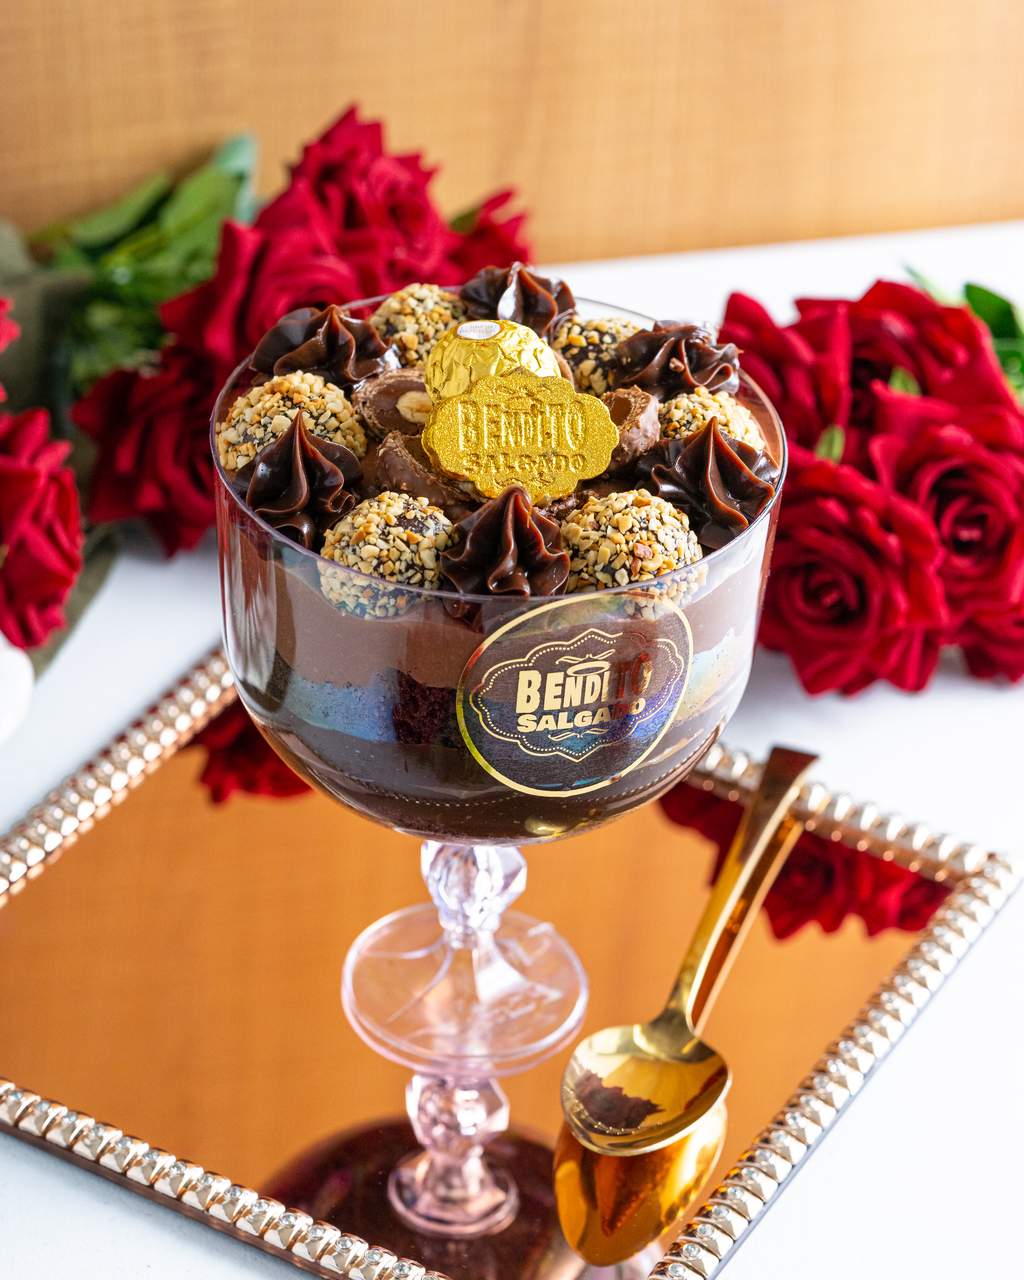 Taça Sobremesa Ferrero Rocher – Bendito Salgado